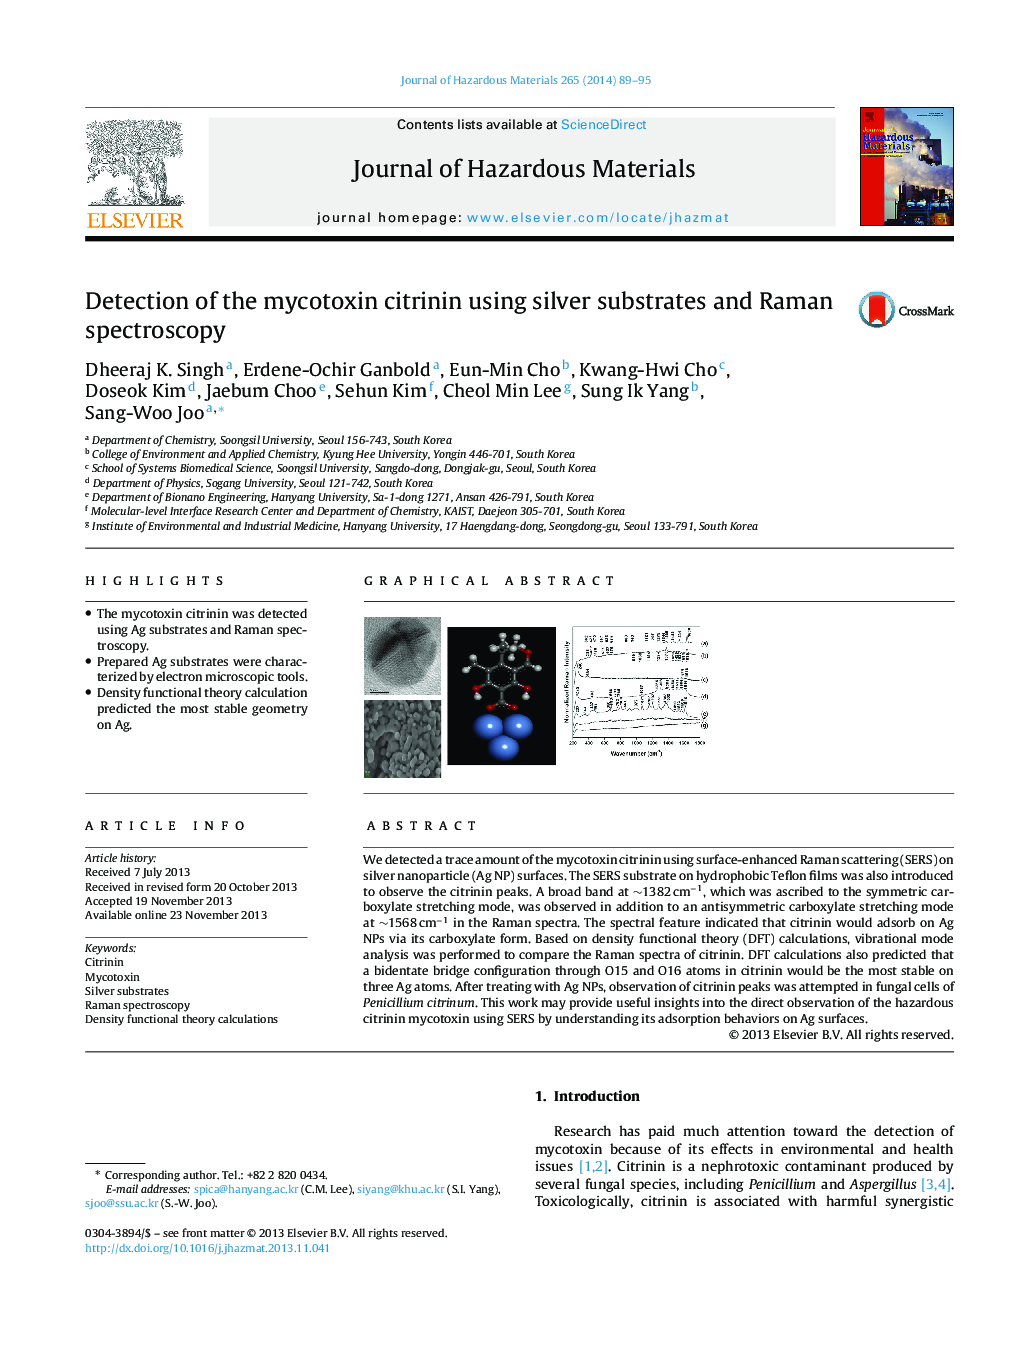 تشخیص متیکونین سیترینین با استفاده از نقره و اسپکتروسکوپ رامان 